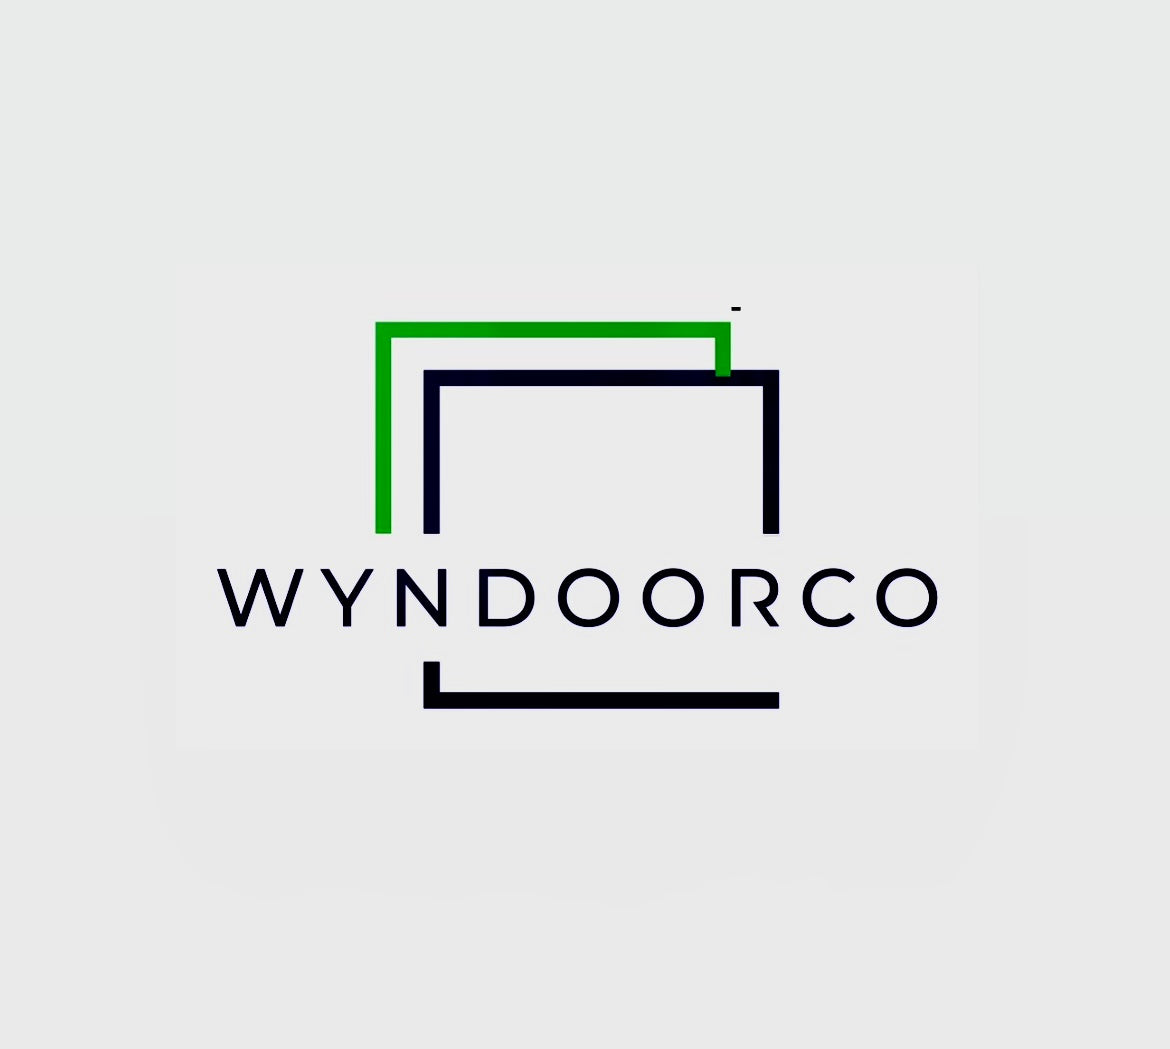 Wyndoorco